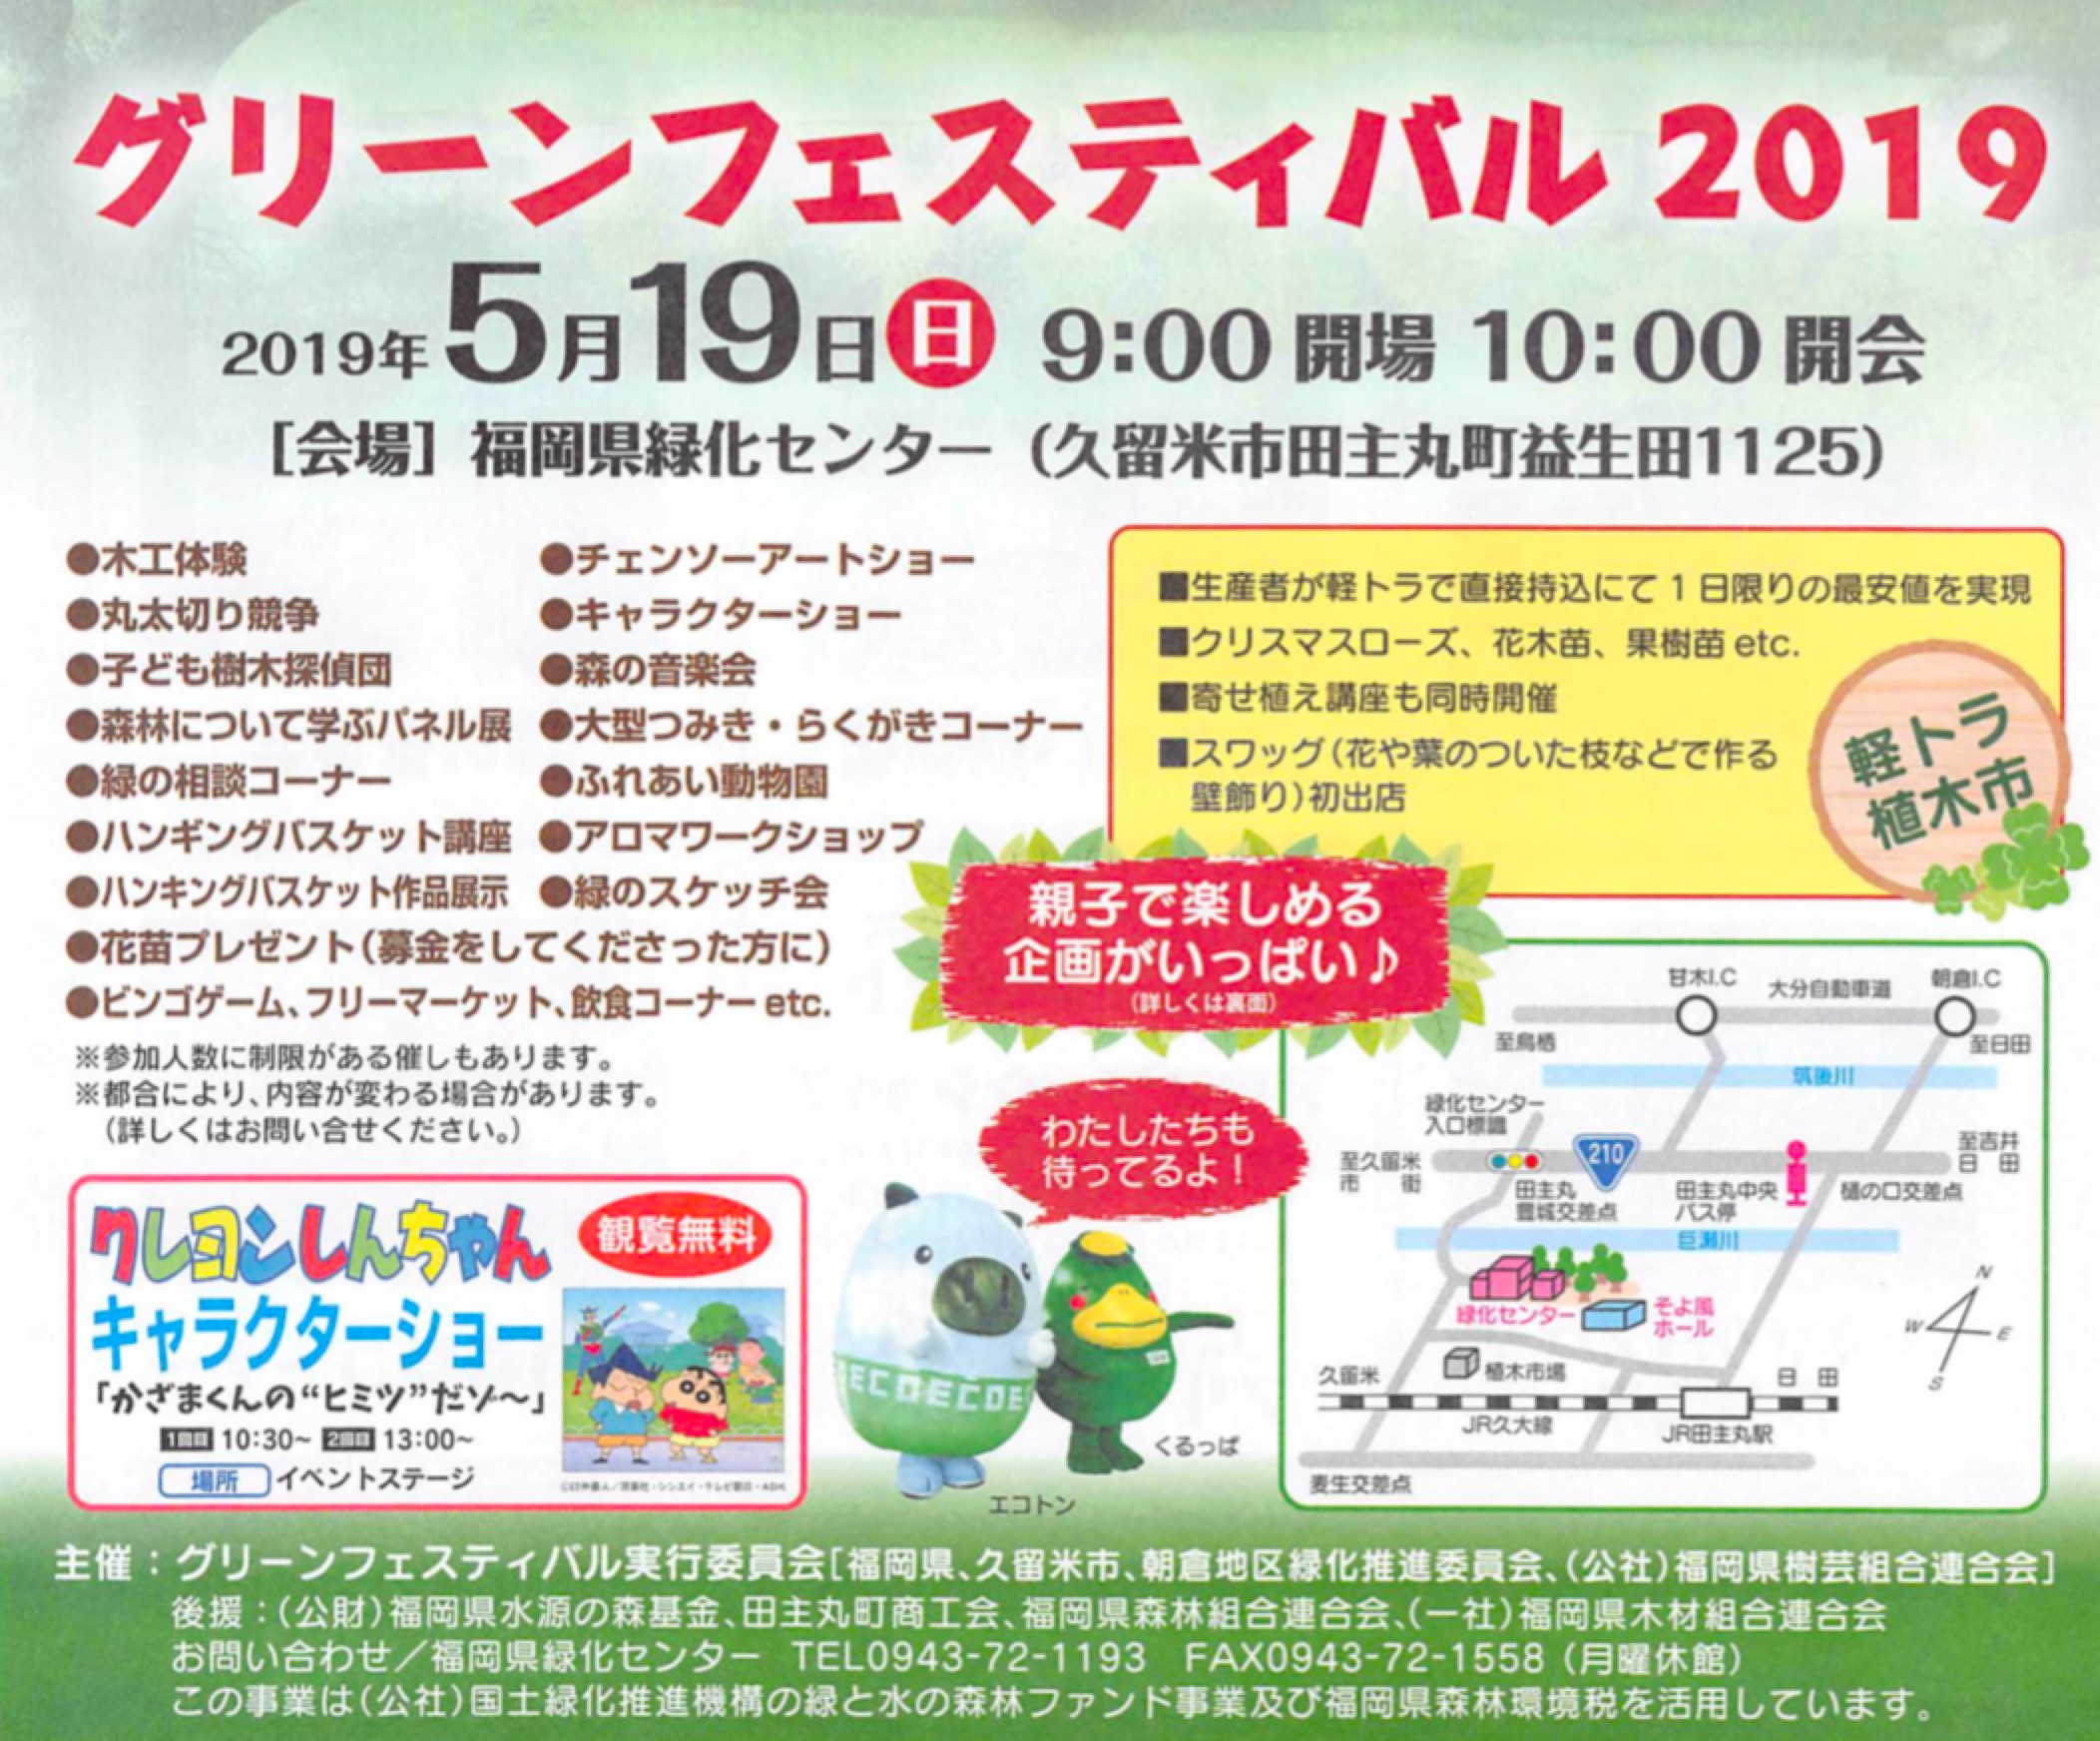 グリーンフェスティバル2019 丸太切り競争・軽トラ植木市開催【久留米市】